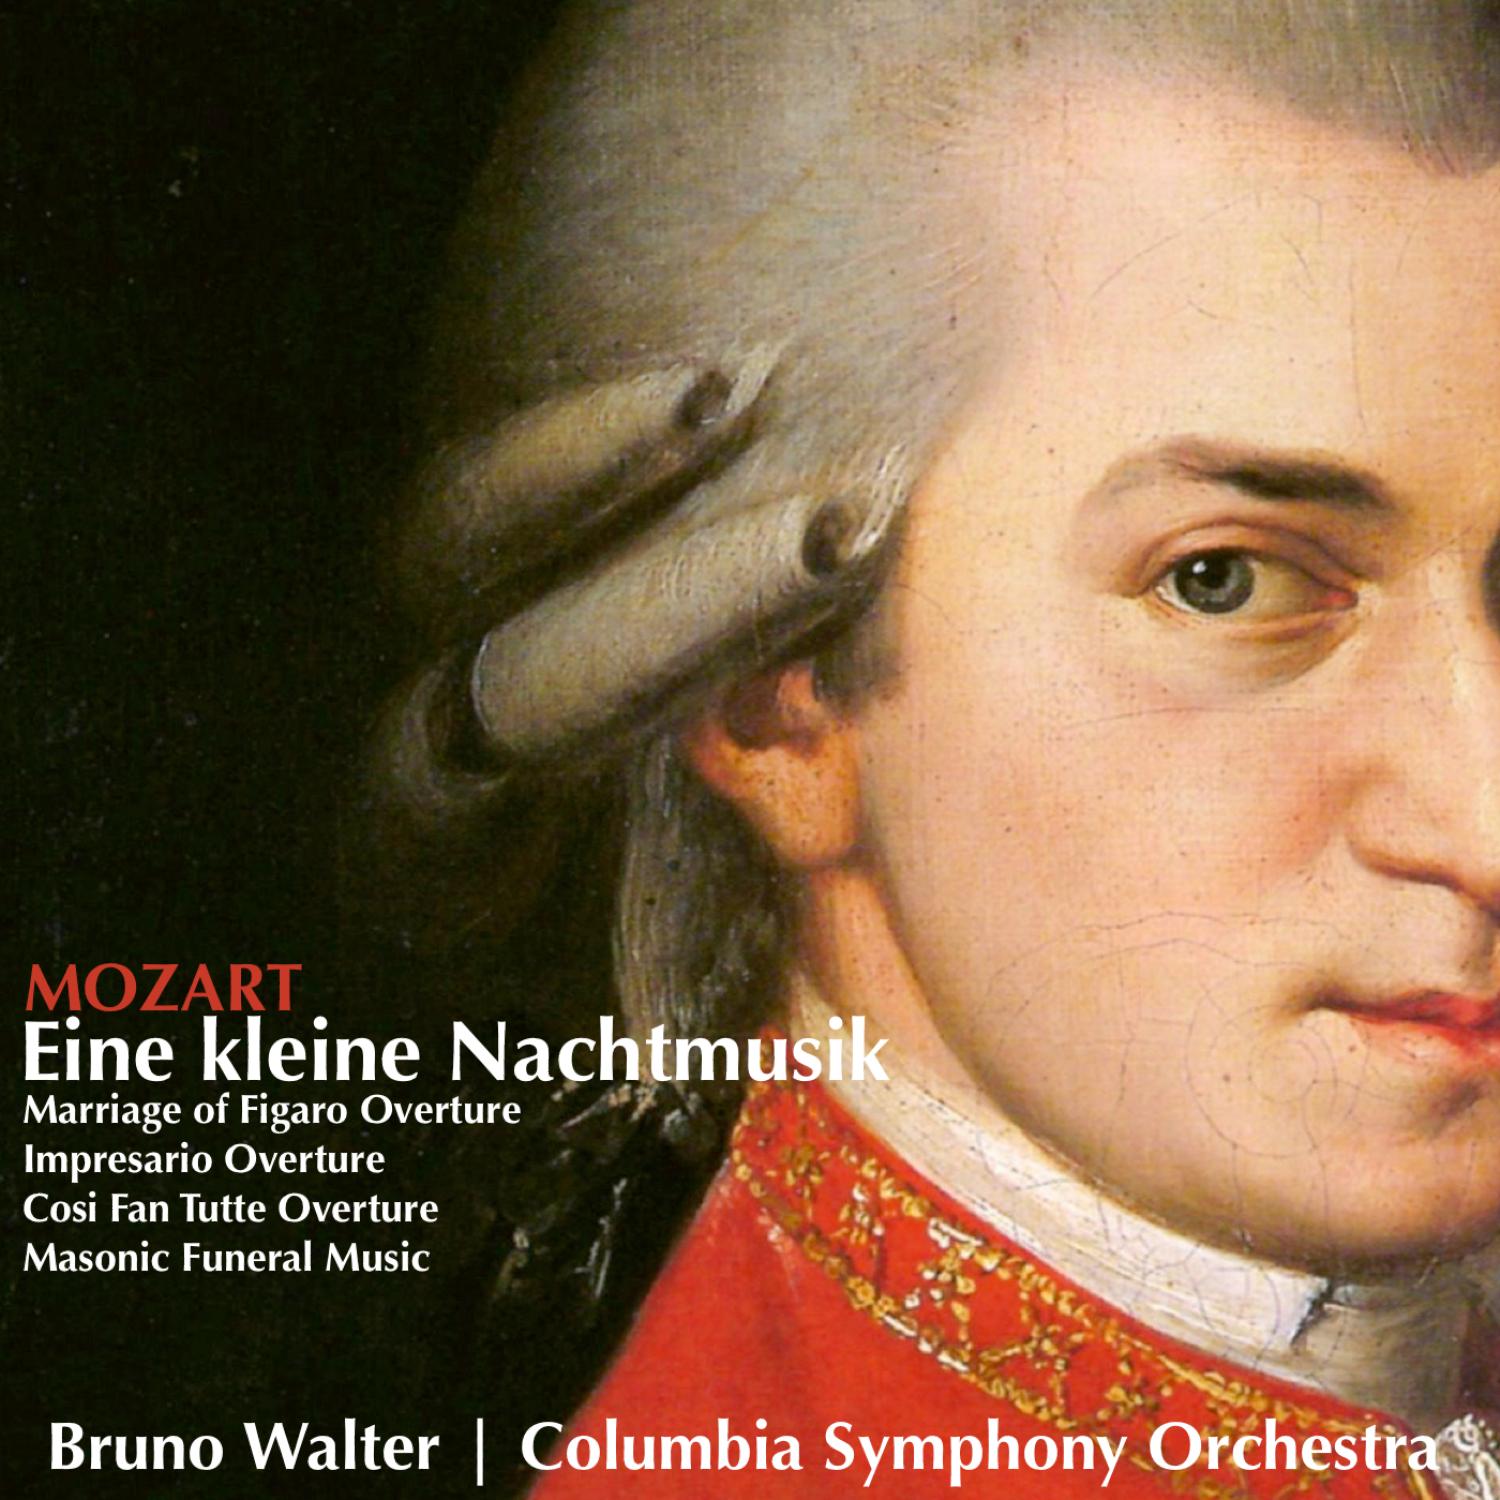 Serenade No.13 for Strings in G major, K525, 'Eine kleine Nachtmusik': I. Allegro